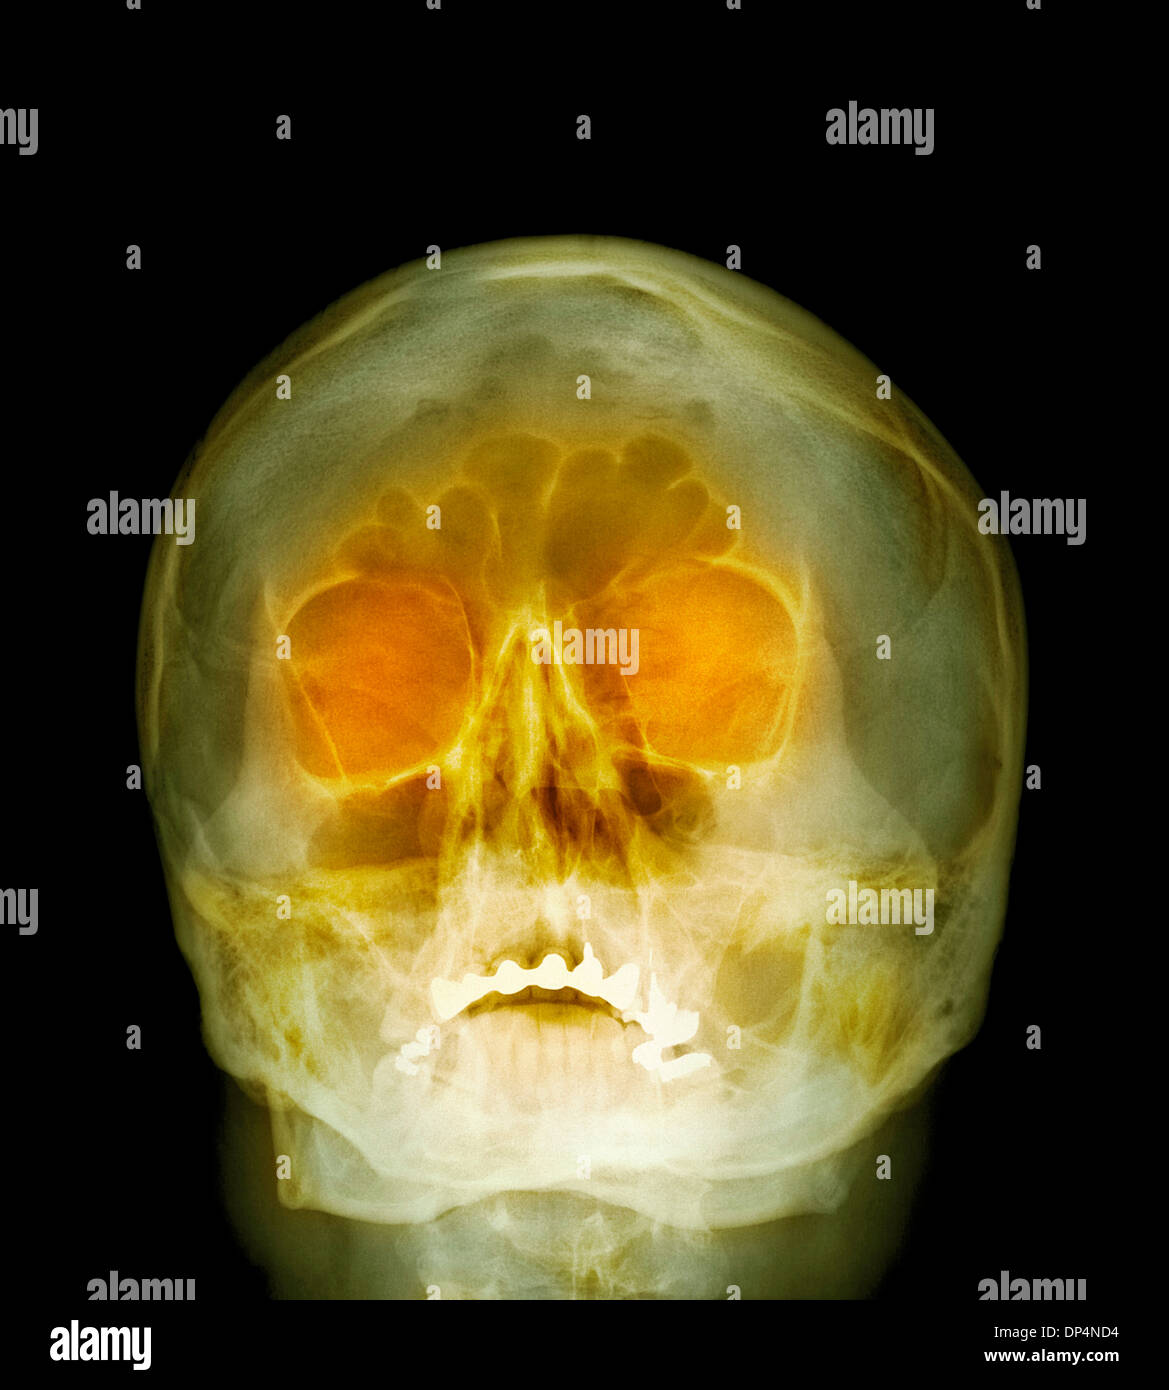 Shotgun injury, X-ray Stock Photo